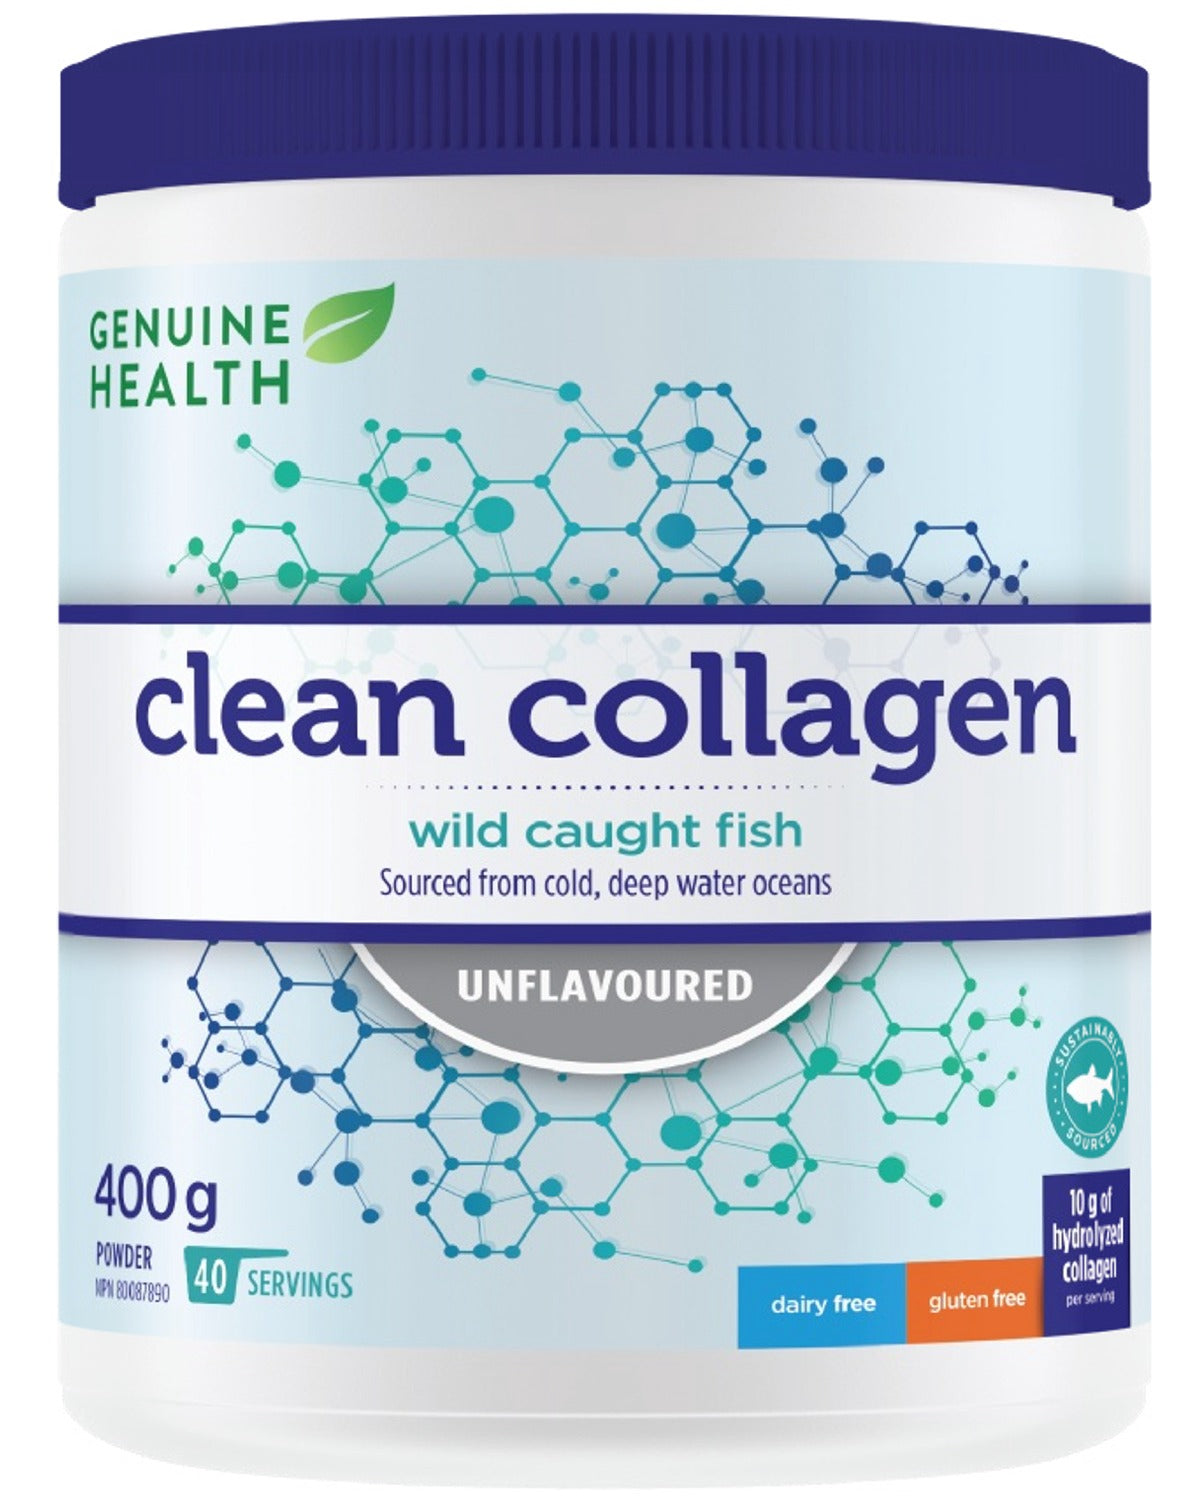 GENUINE HEALTH Clean Collagen Marine Unflavored (400g)